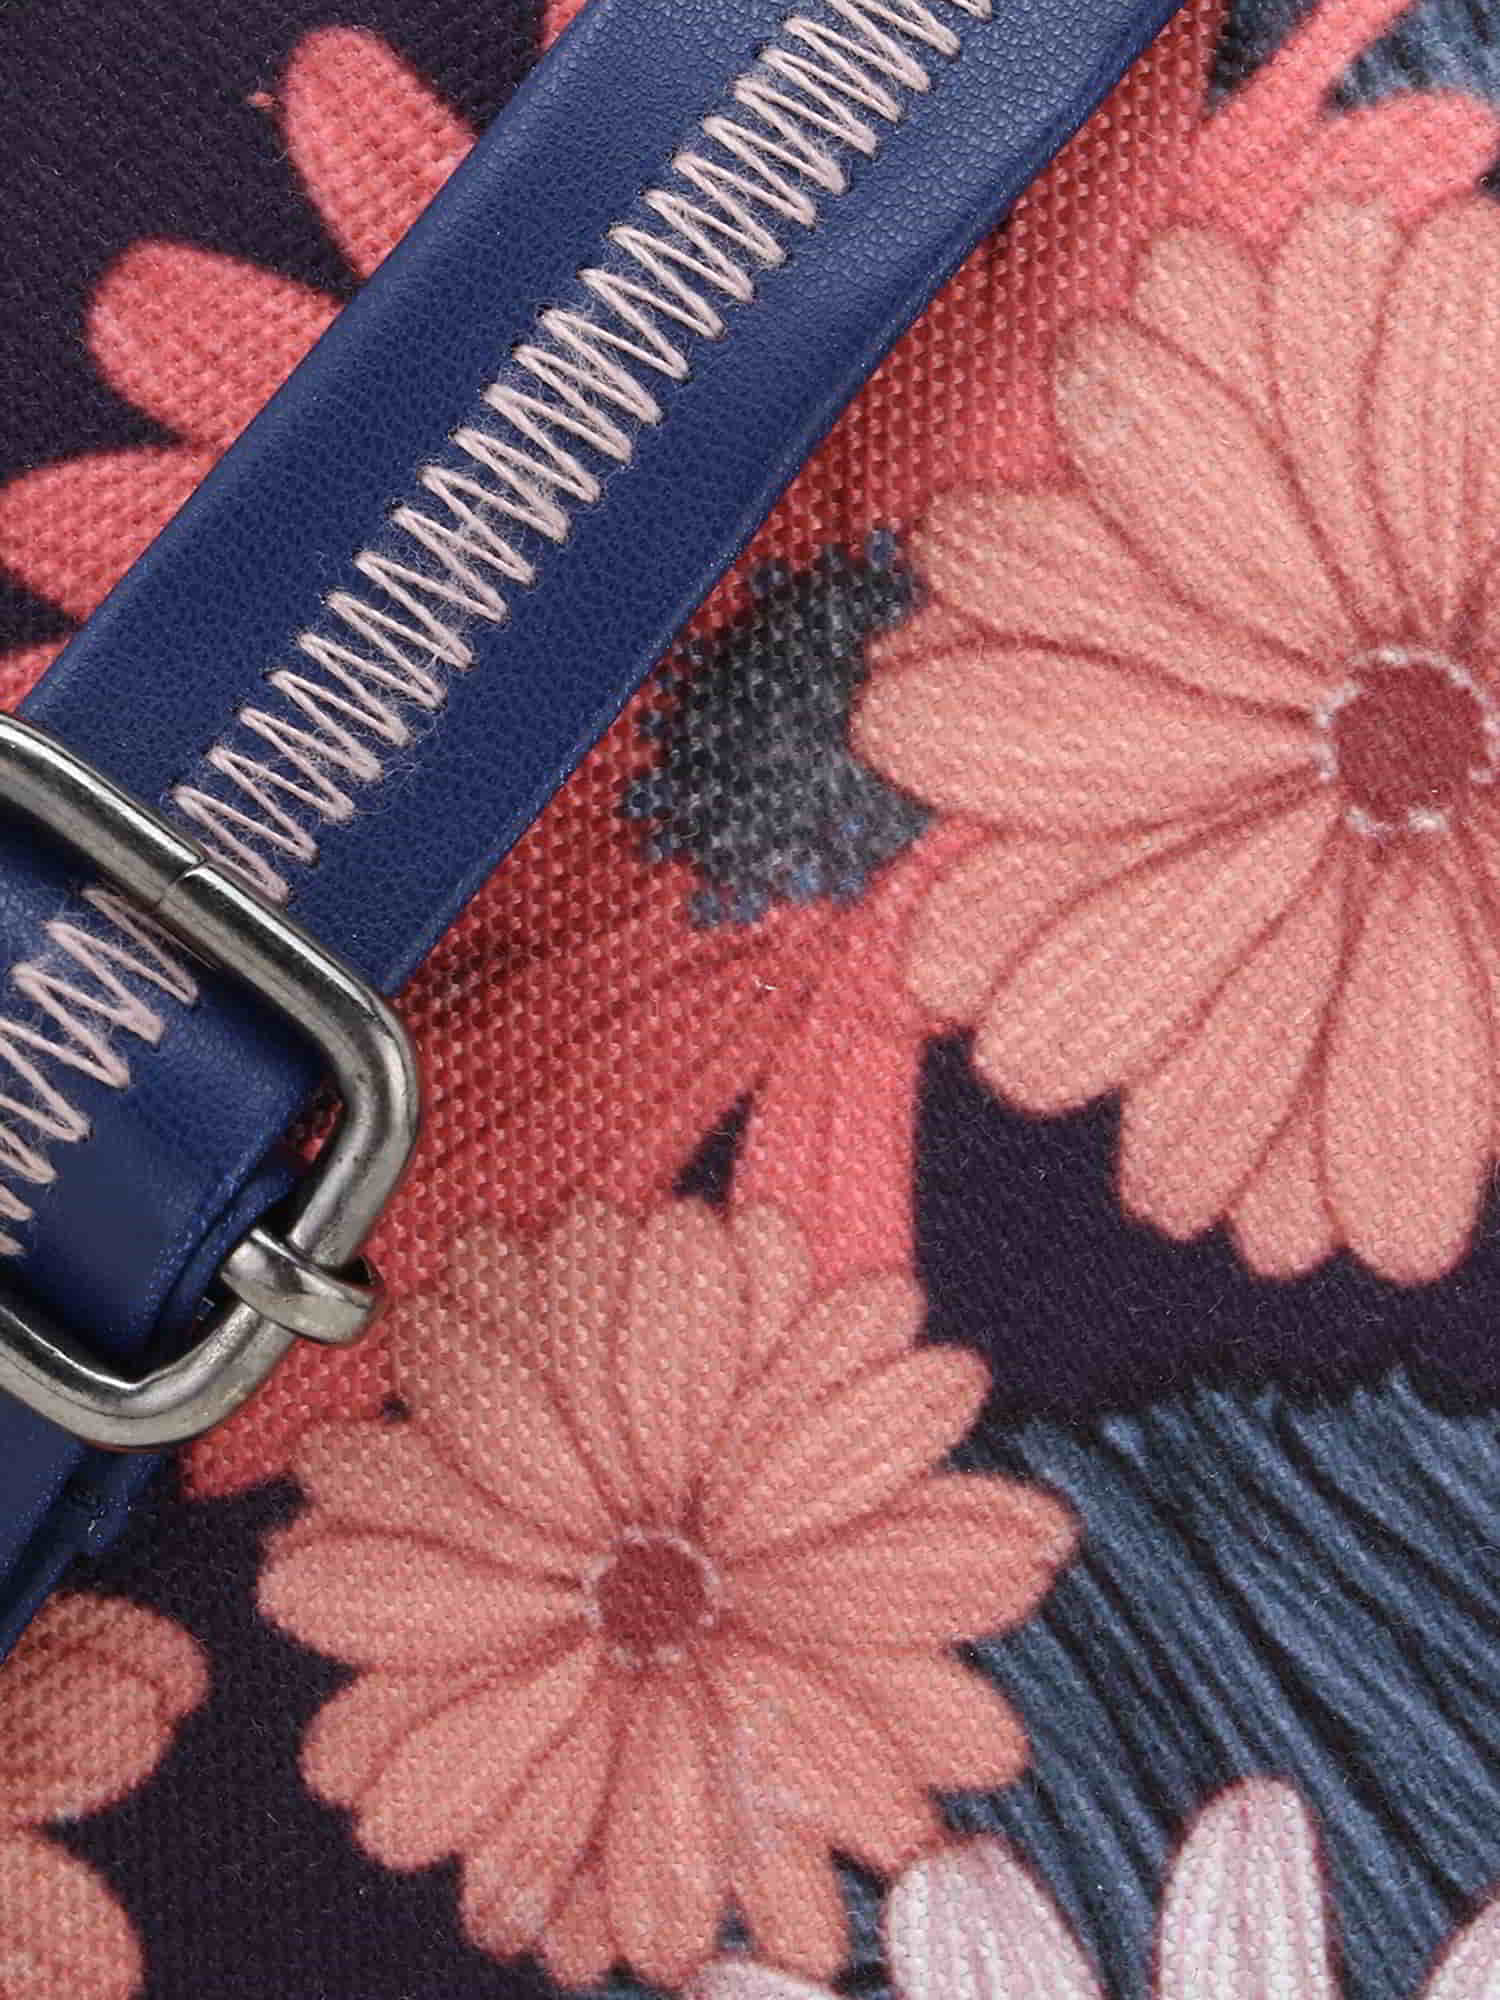 Polyester & Leatherette Digital Print Floral Sling Bag